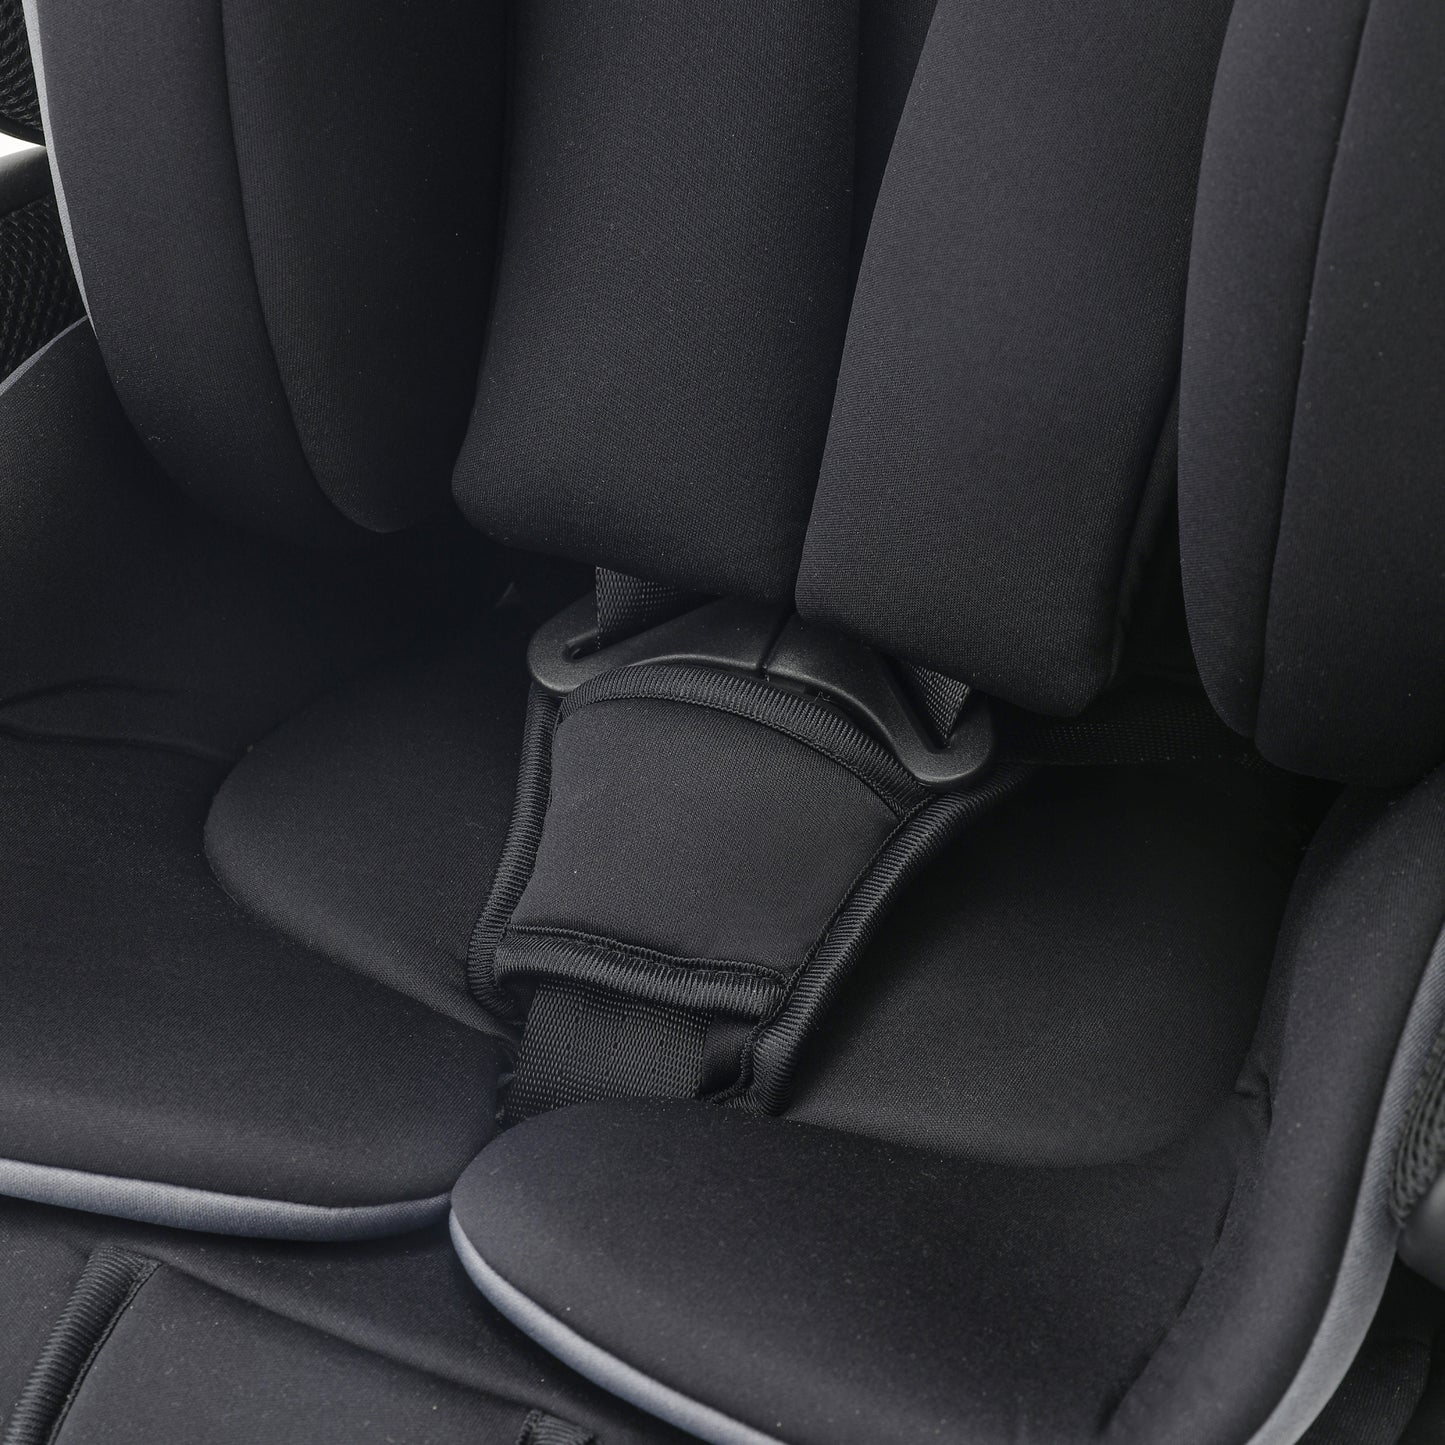 Cozy N Safe Hudson i-Size Car Seat